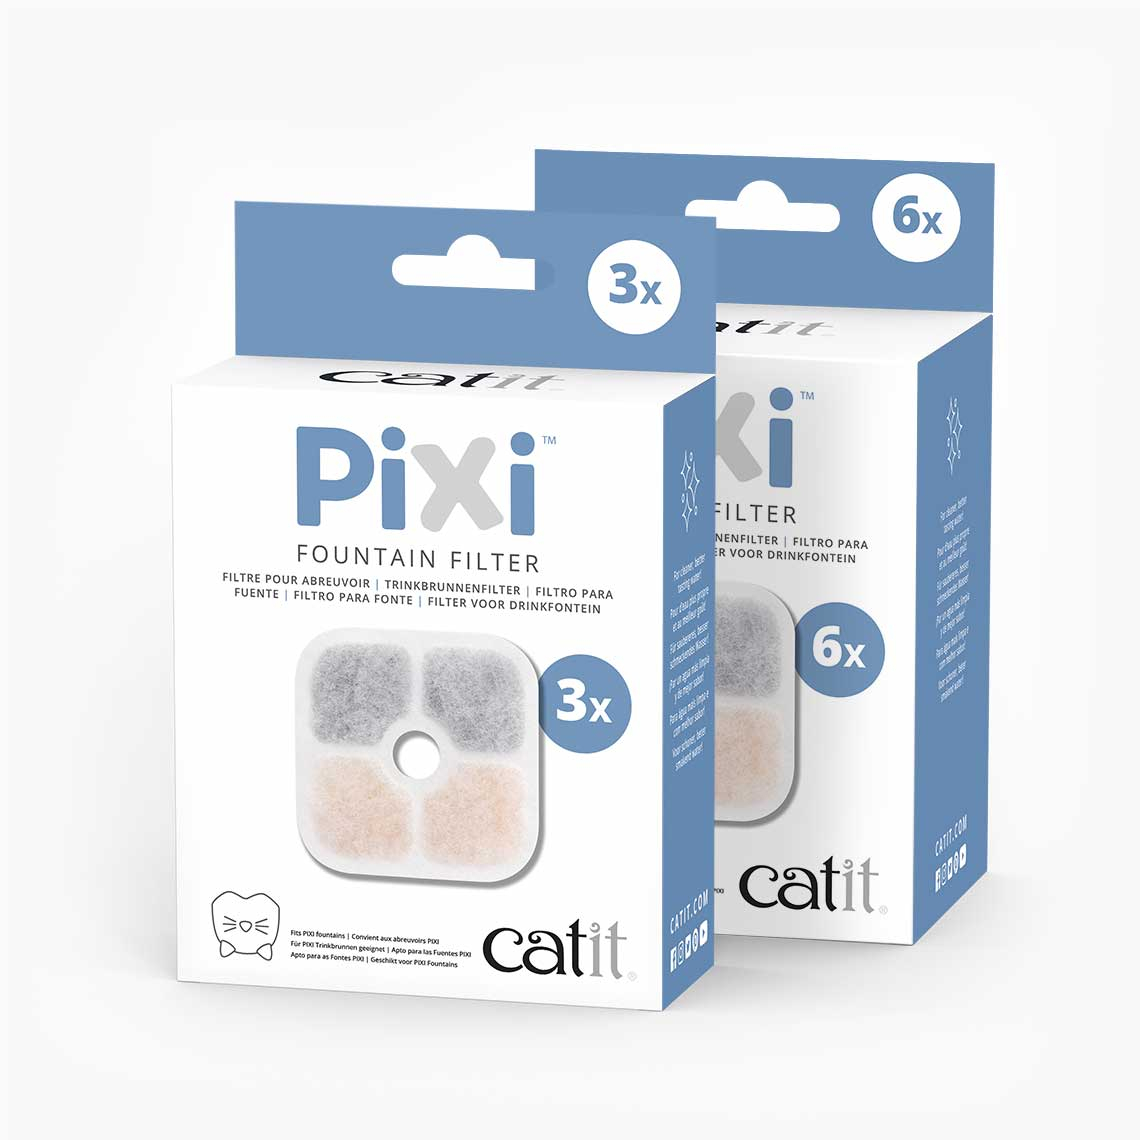 Catit Pixi filtro para fuentes - 3 y 6 unidades